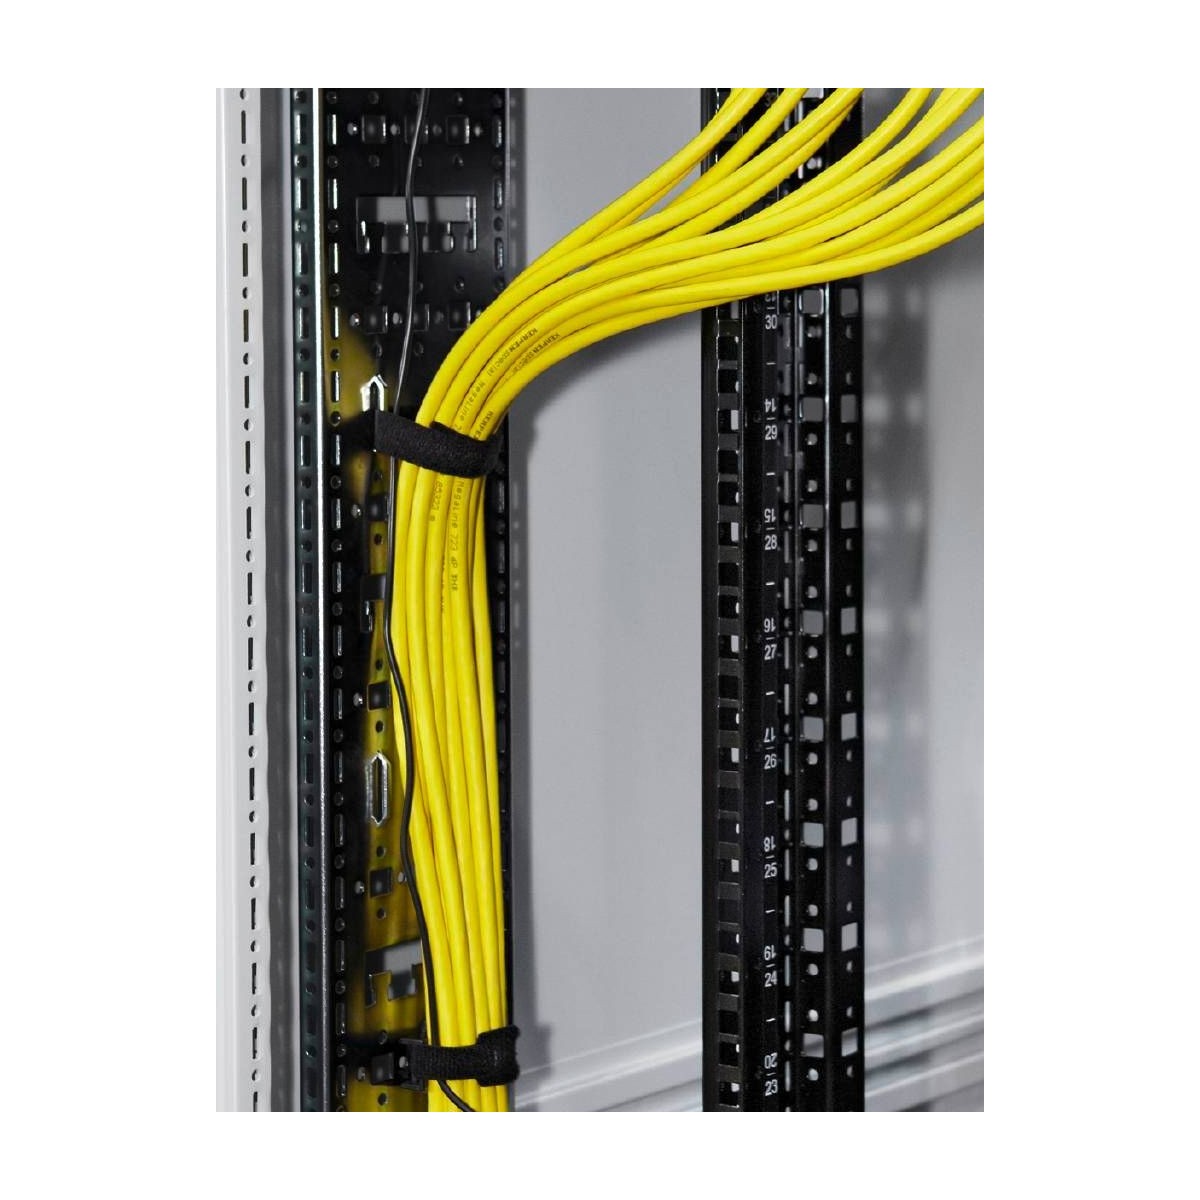 Rittal 5302.120 - Cable management panel - Black - Steel - VX - VX IT - 145 mm - 1 pc(s)